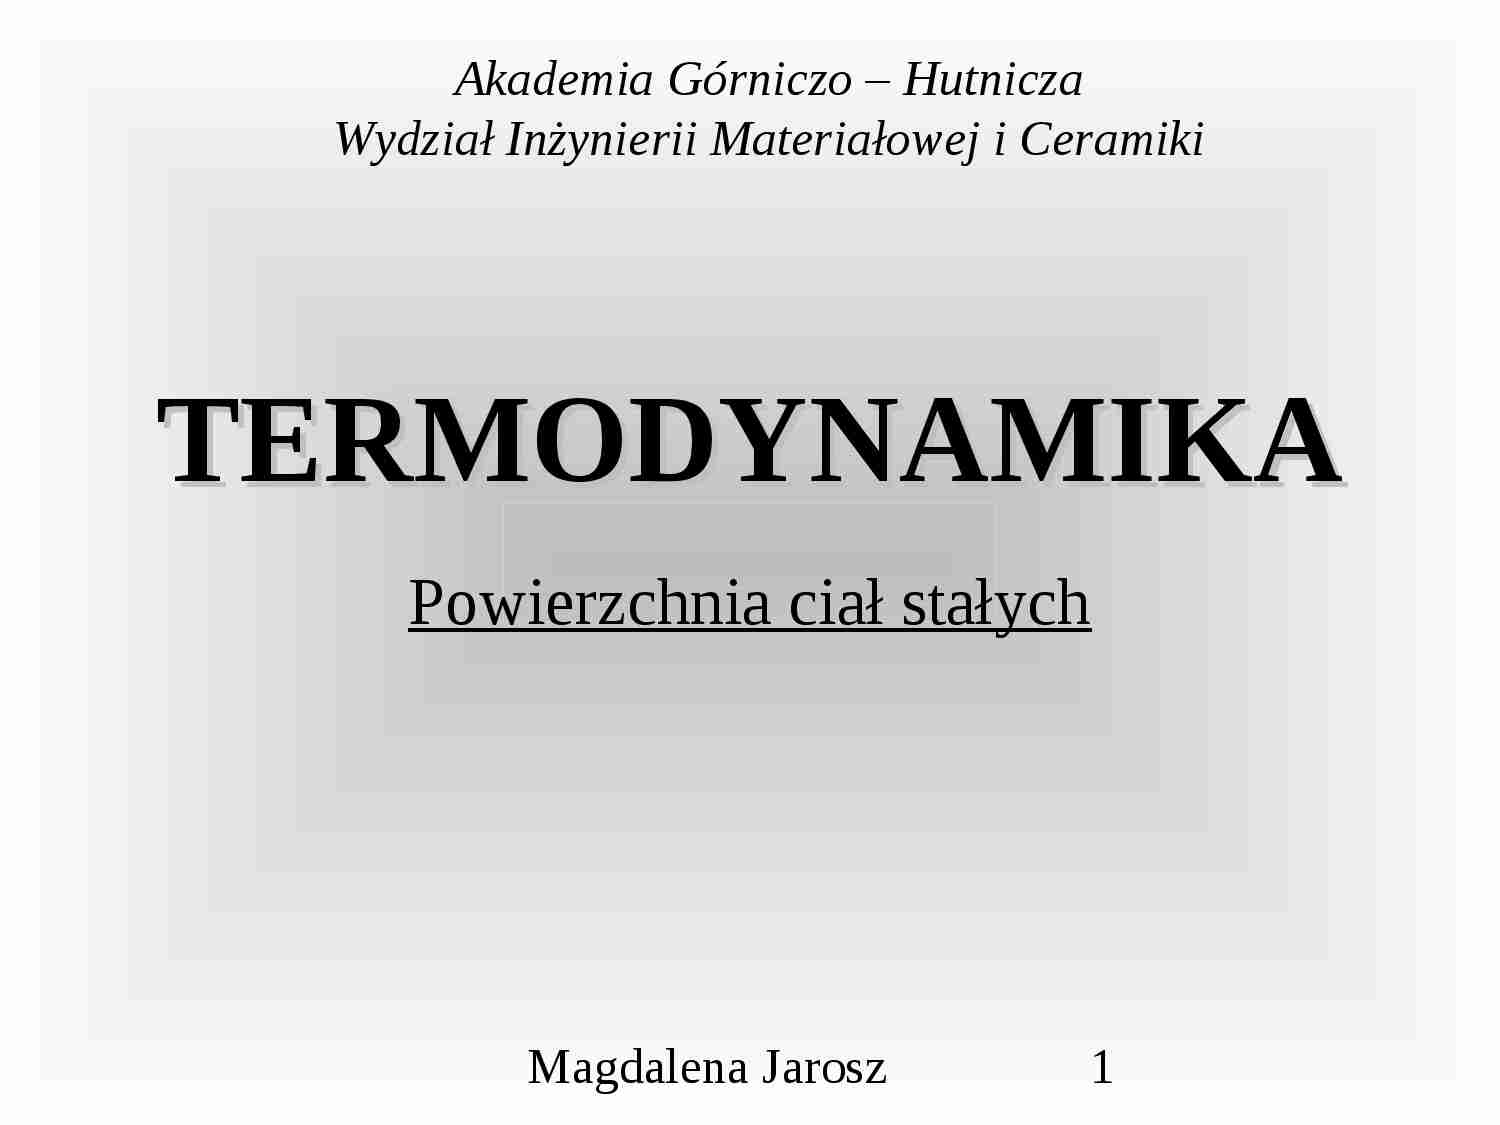 Termodynamika - prezentacja - strona 1